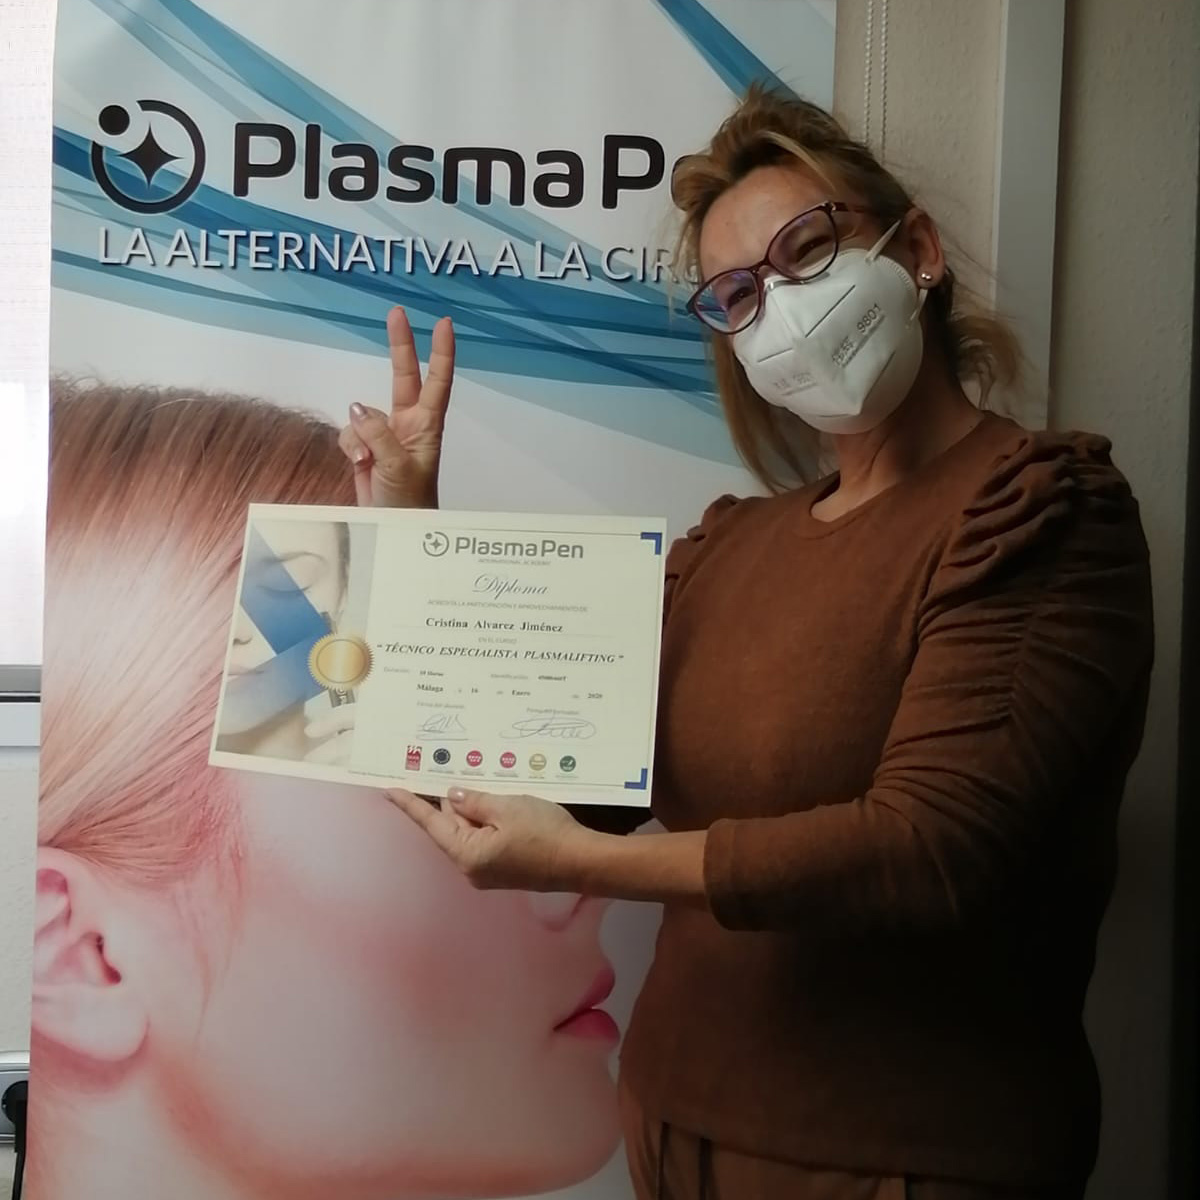 Cristina Álvarez Jiménez : Técnico Especializado en PlasmaPen